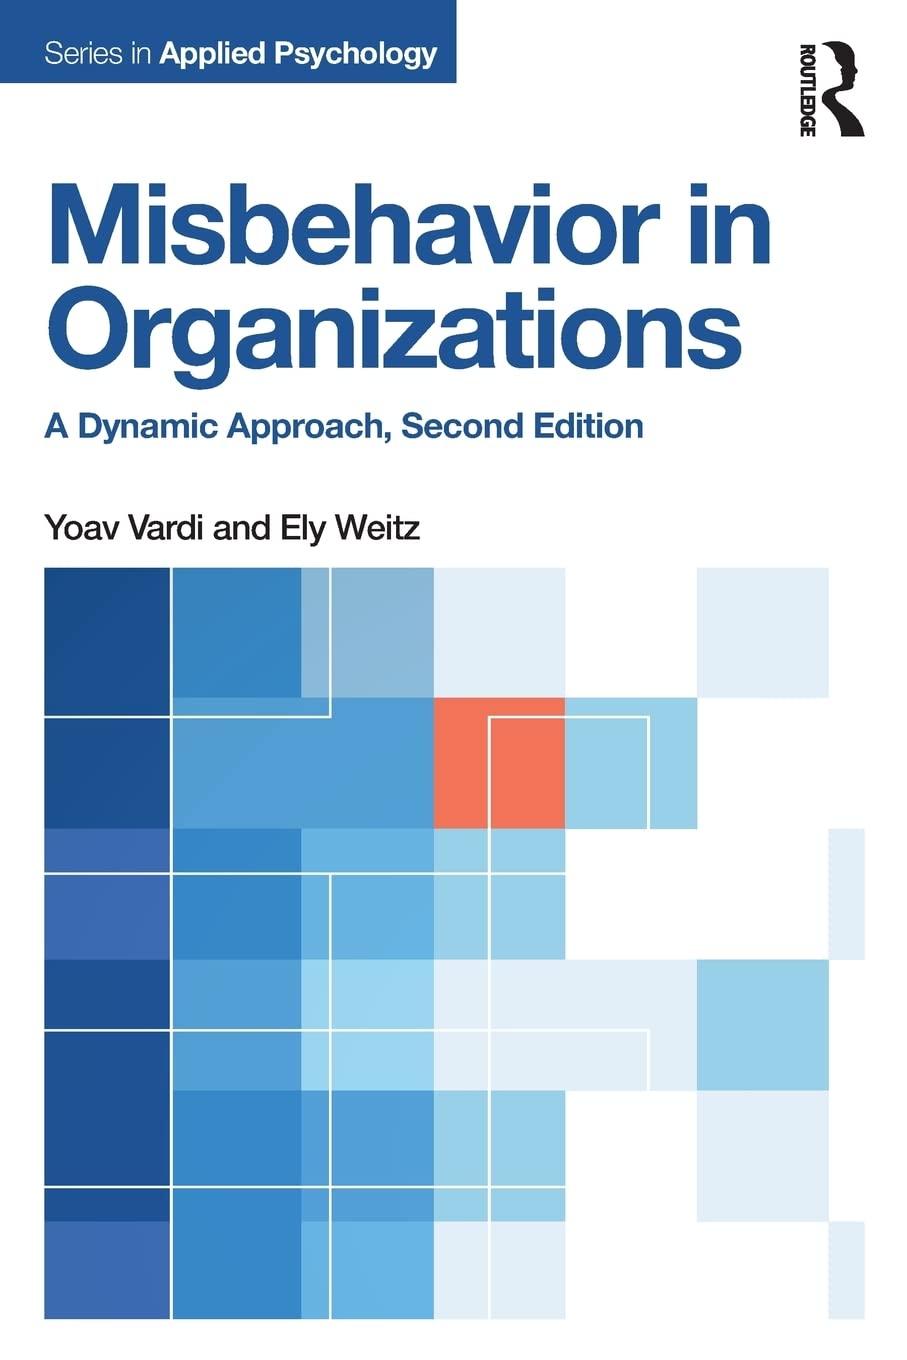 misbehavior in organizations a dynamic approach 2nd edition yoav vardi, ely weitz 113884098x, 9781138840980